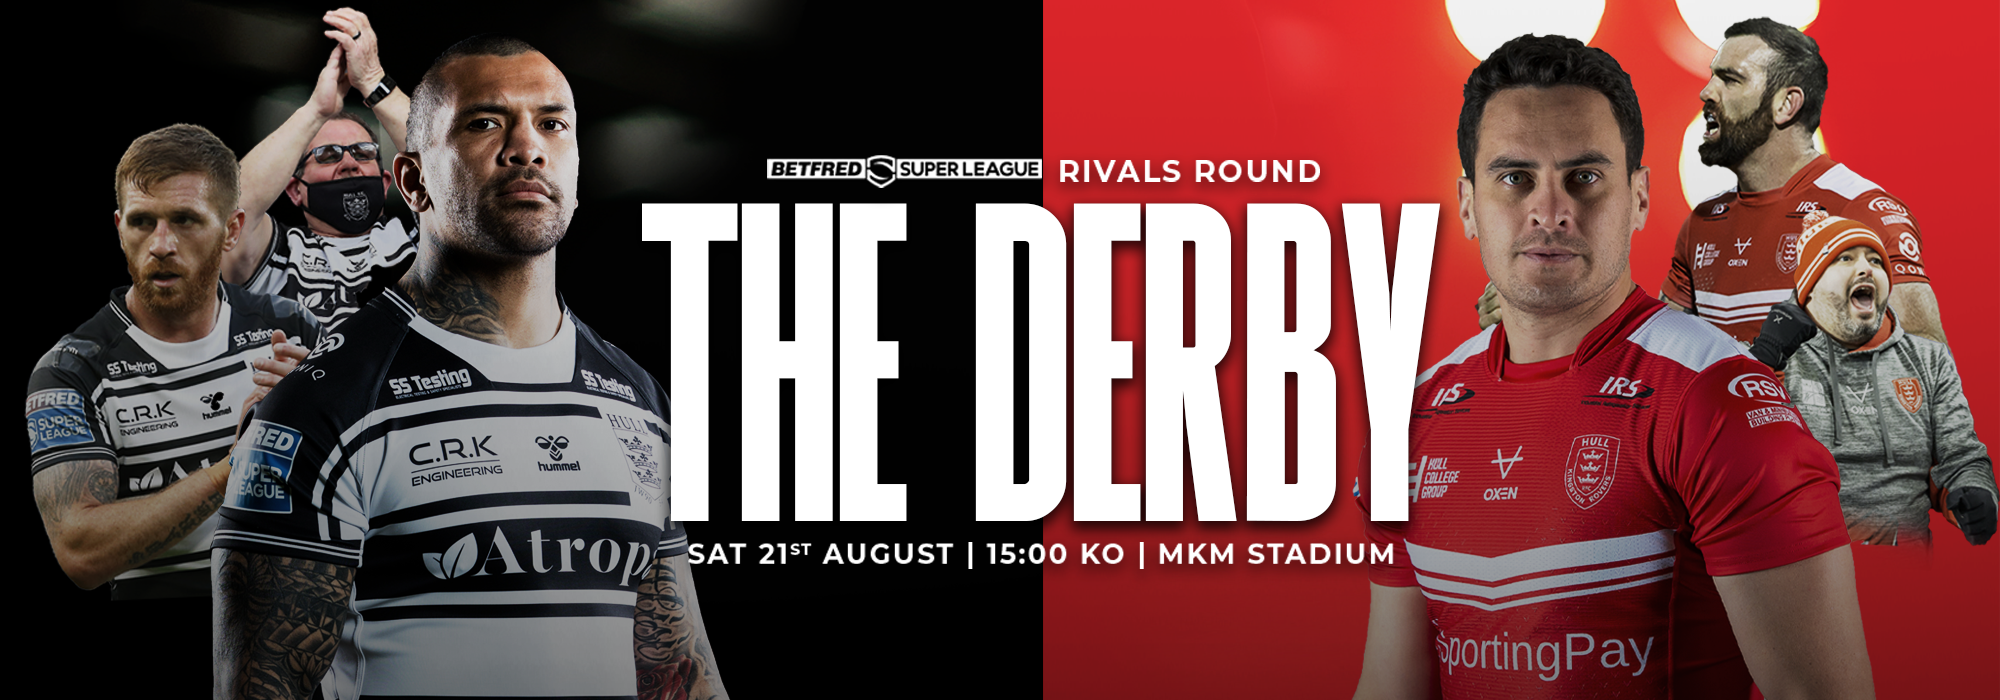 Up Next: #DerbyDay